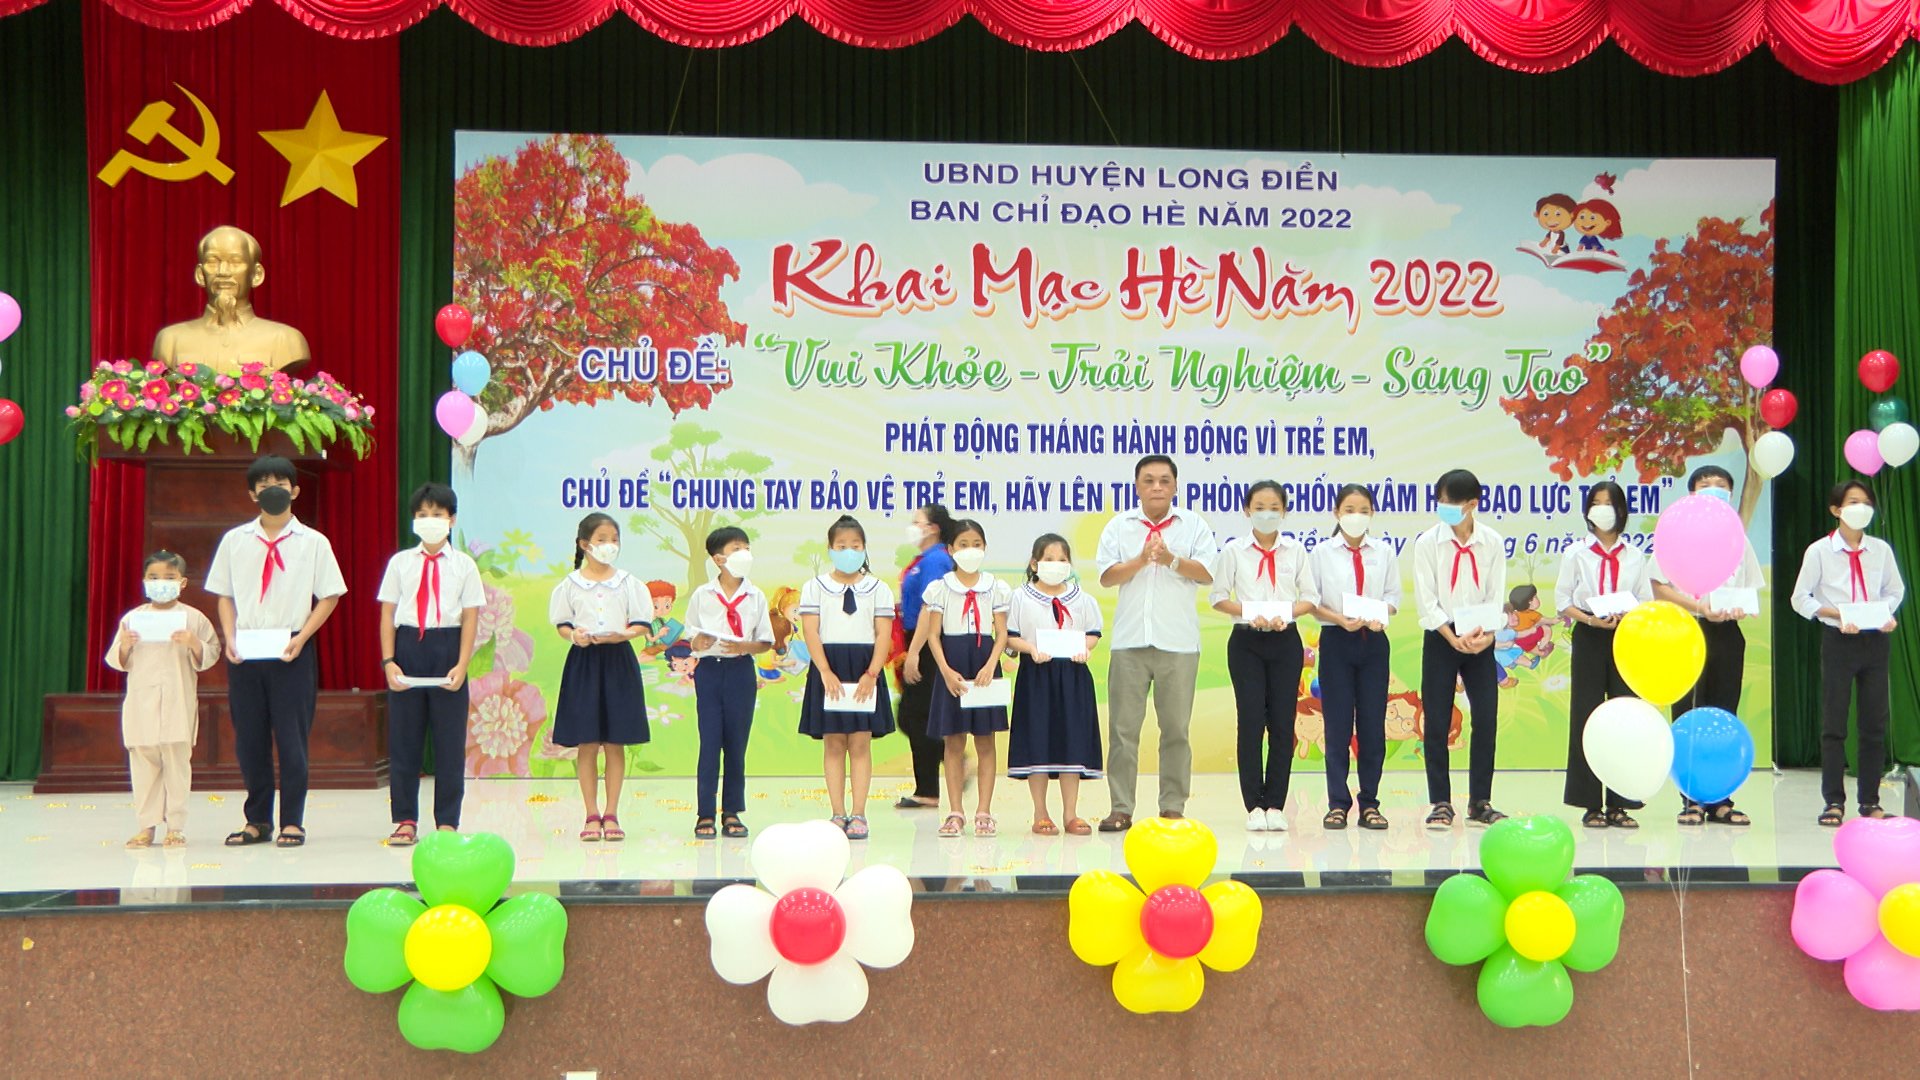 Ông Trần Quang Vinh, Phó Trưởng Ban Dân vận Huyện ủy Long Điền trao học bổng của Hội khuyến học huyện cho các em học sinh nghèo, hiếu học.